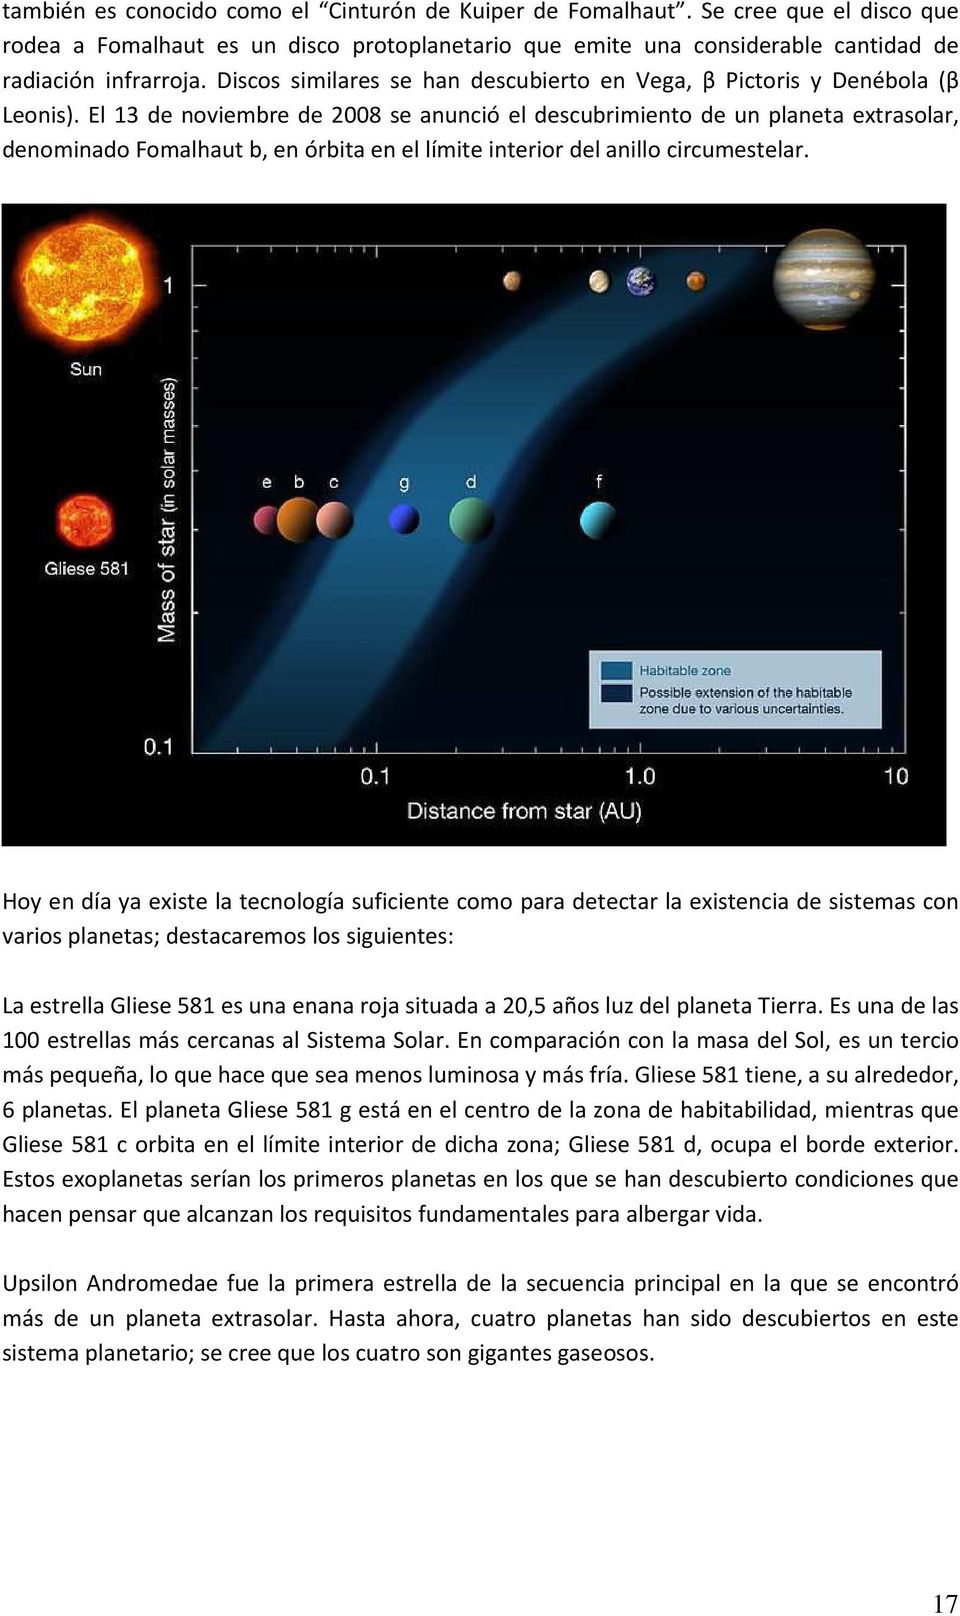 El 13 de noviembre de 2008 se anunció el descubrimiento de un planeta extrasolar, denominado Fomalhaut b, en órbita en el límite interior del anillo circumestelar.